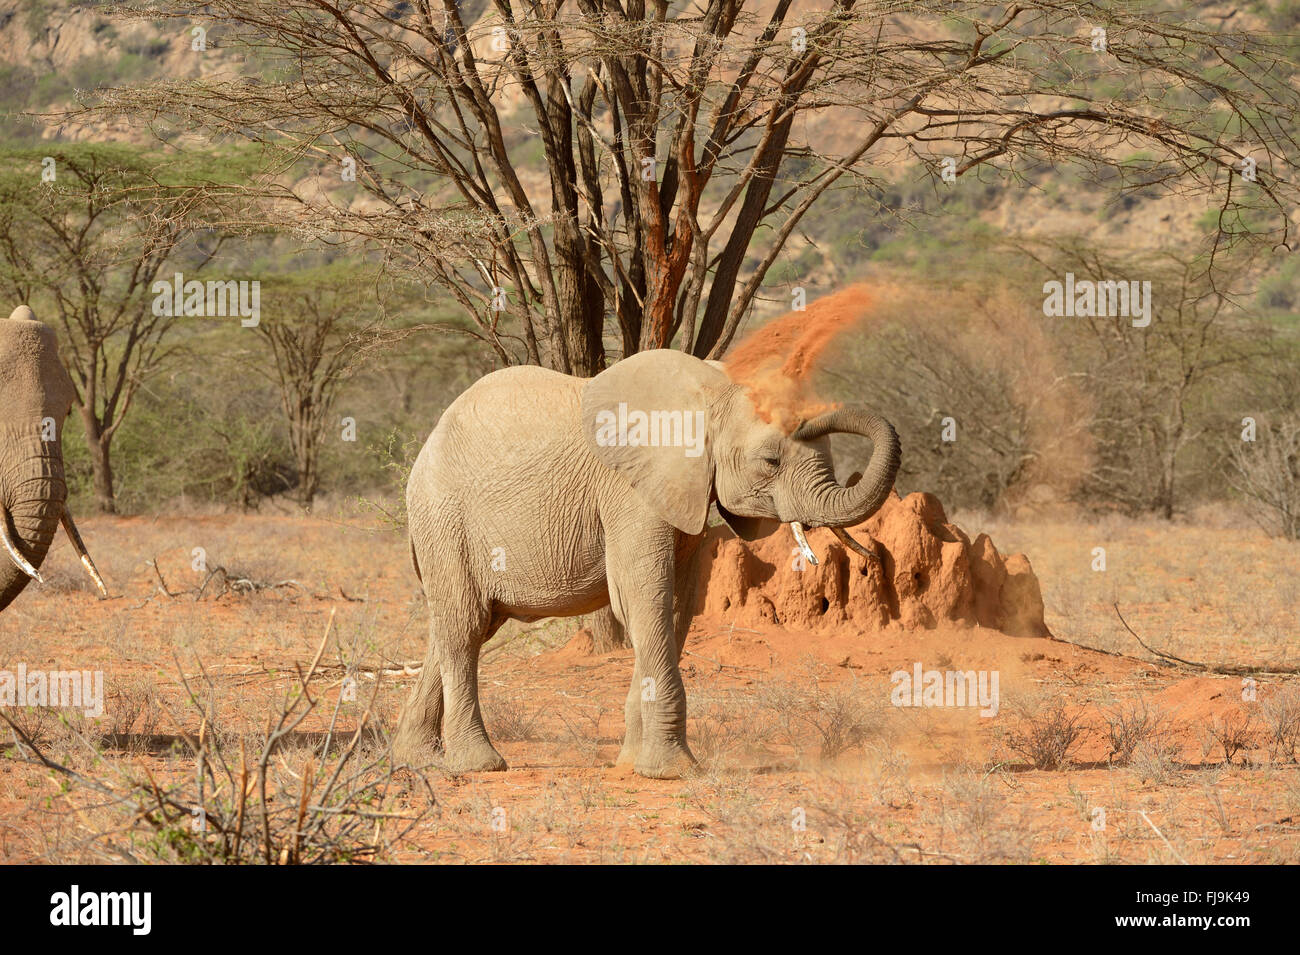 L'éléphant africain (Loxodonta africana) jeter du sable sur le dos avec le tronc, Shaba National Reserve, Kenya, octobre Banque D'Images